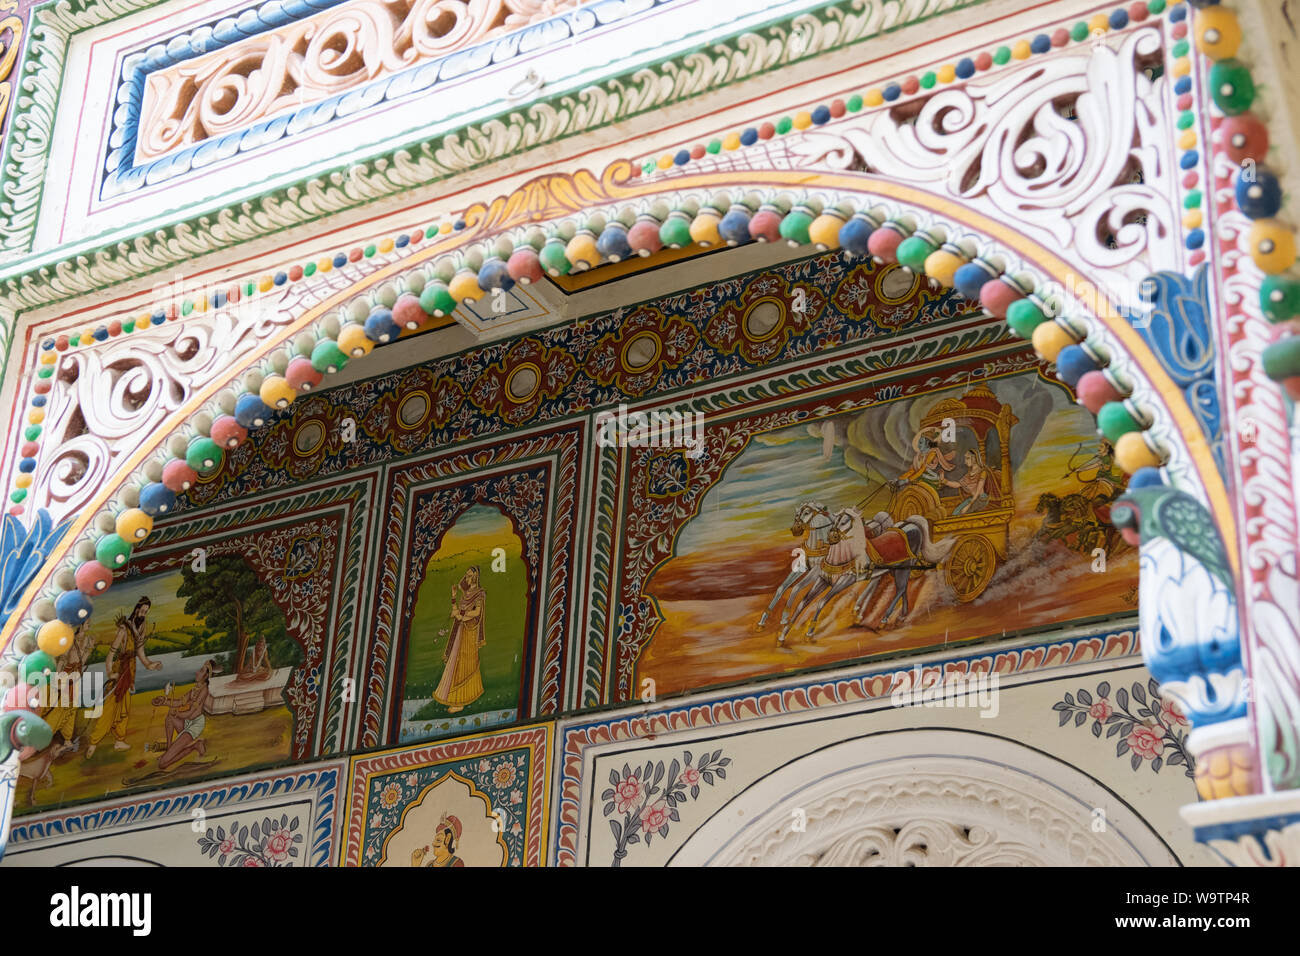 Malereien Aufwändige und Dekorationen verschönern die Wände eines Havelis. Diese sind farbenprächtig und sehr gut erhalten beziehungsweise restauriert Foto Stock